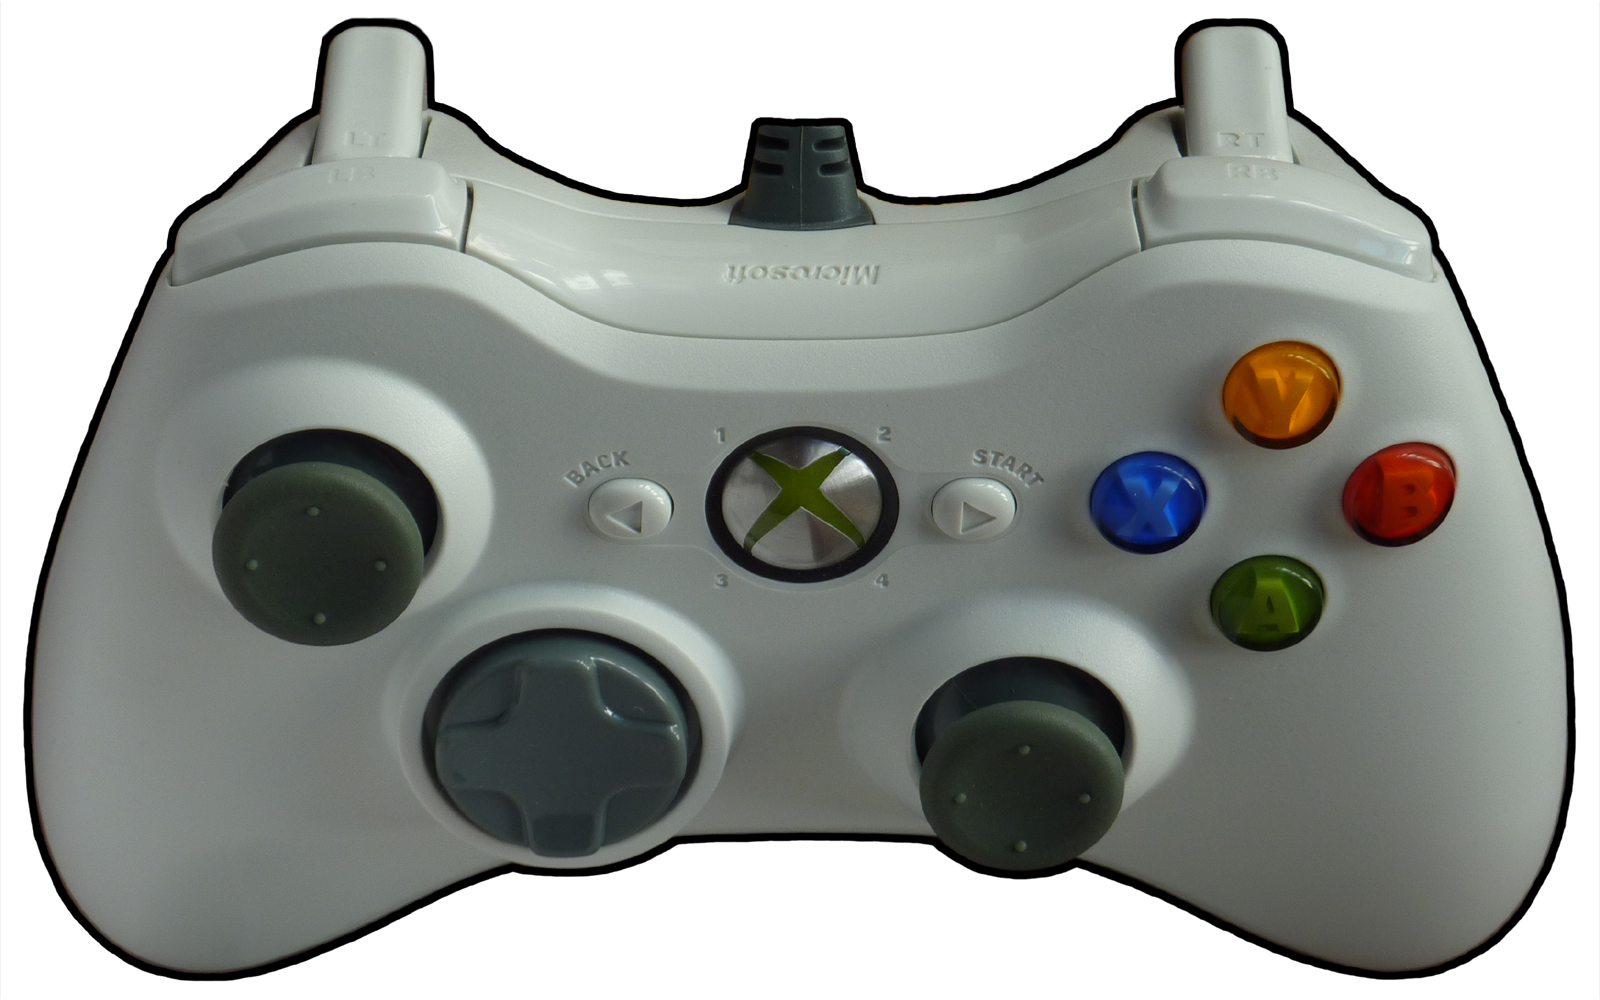 Персонаж на джойстике. Xbox 360 Controller. Джойстик Xbox 360 управление. Геймпад Xbox 360 раскладка. Хбокс 360 управление джойстик РС.